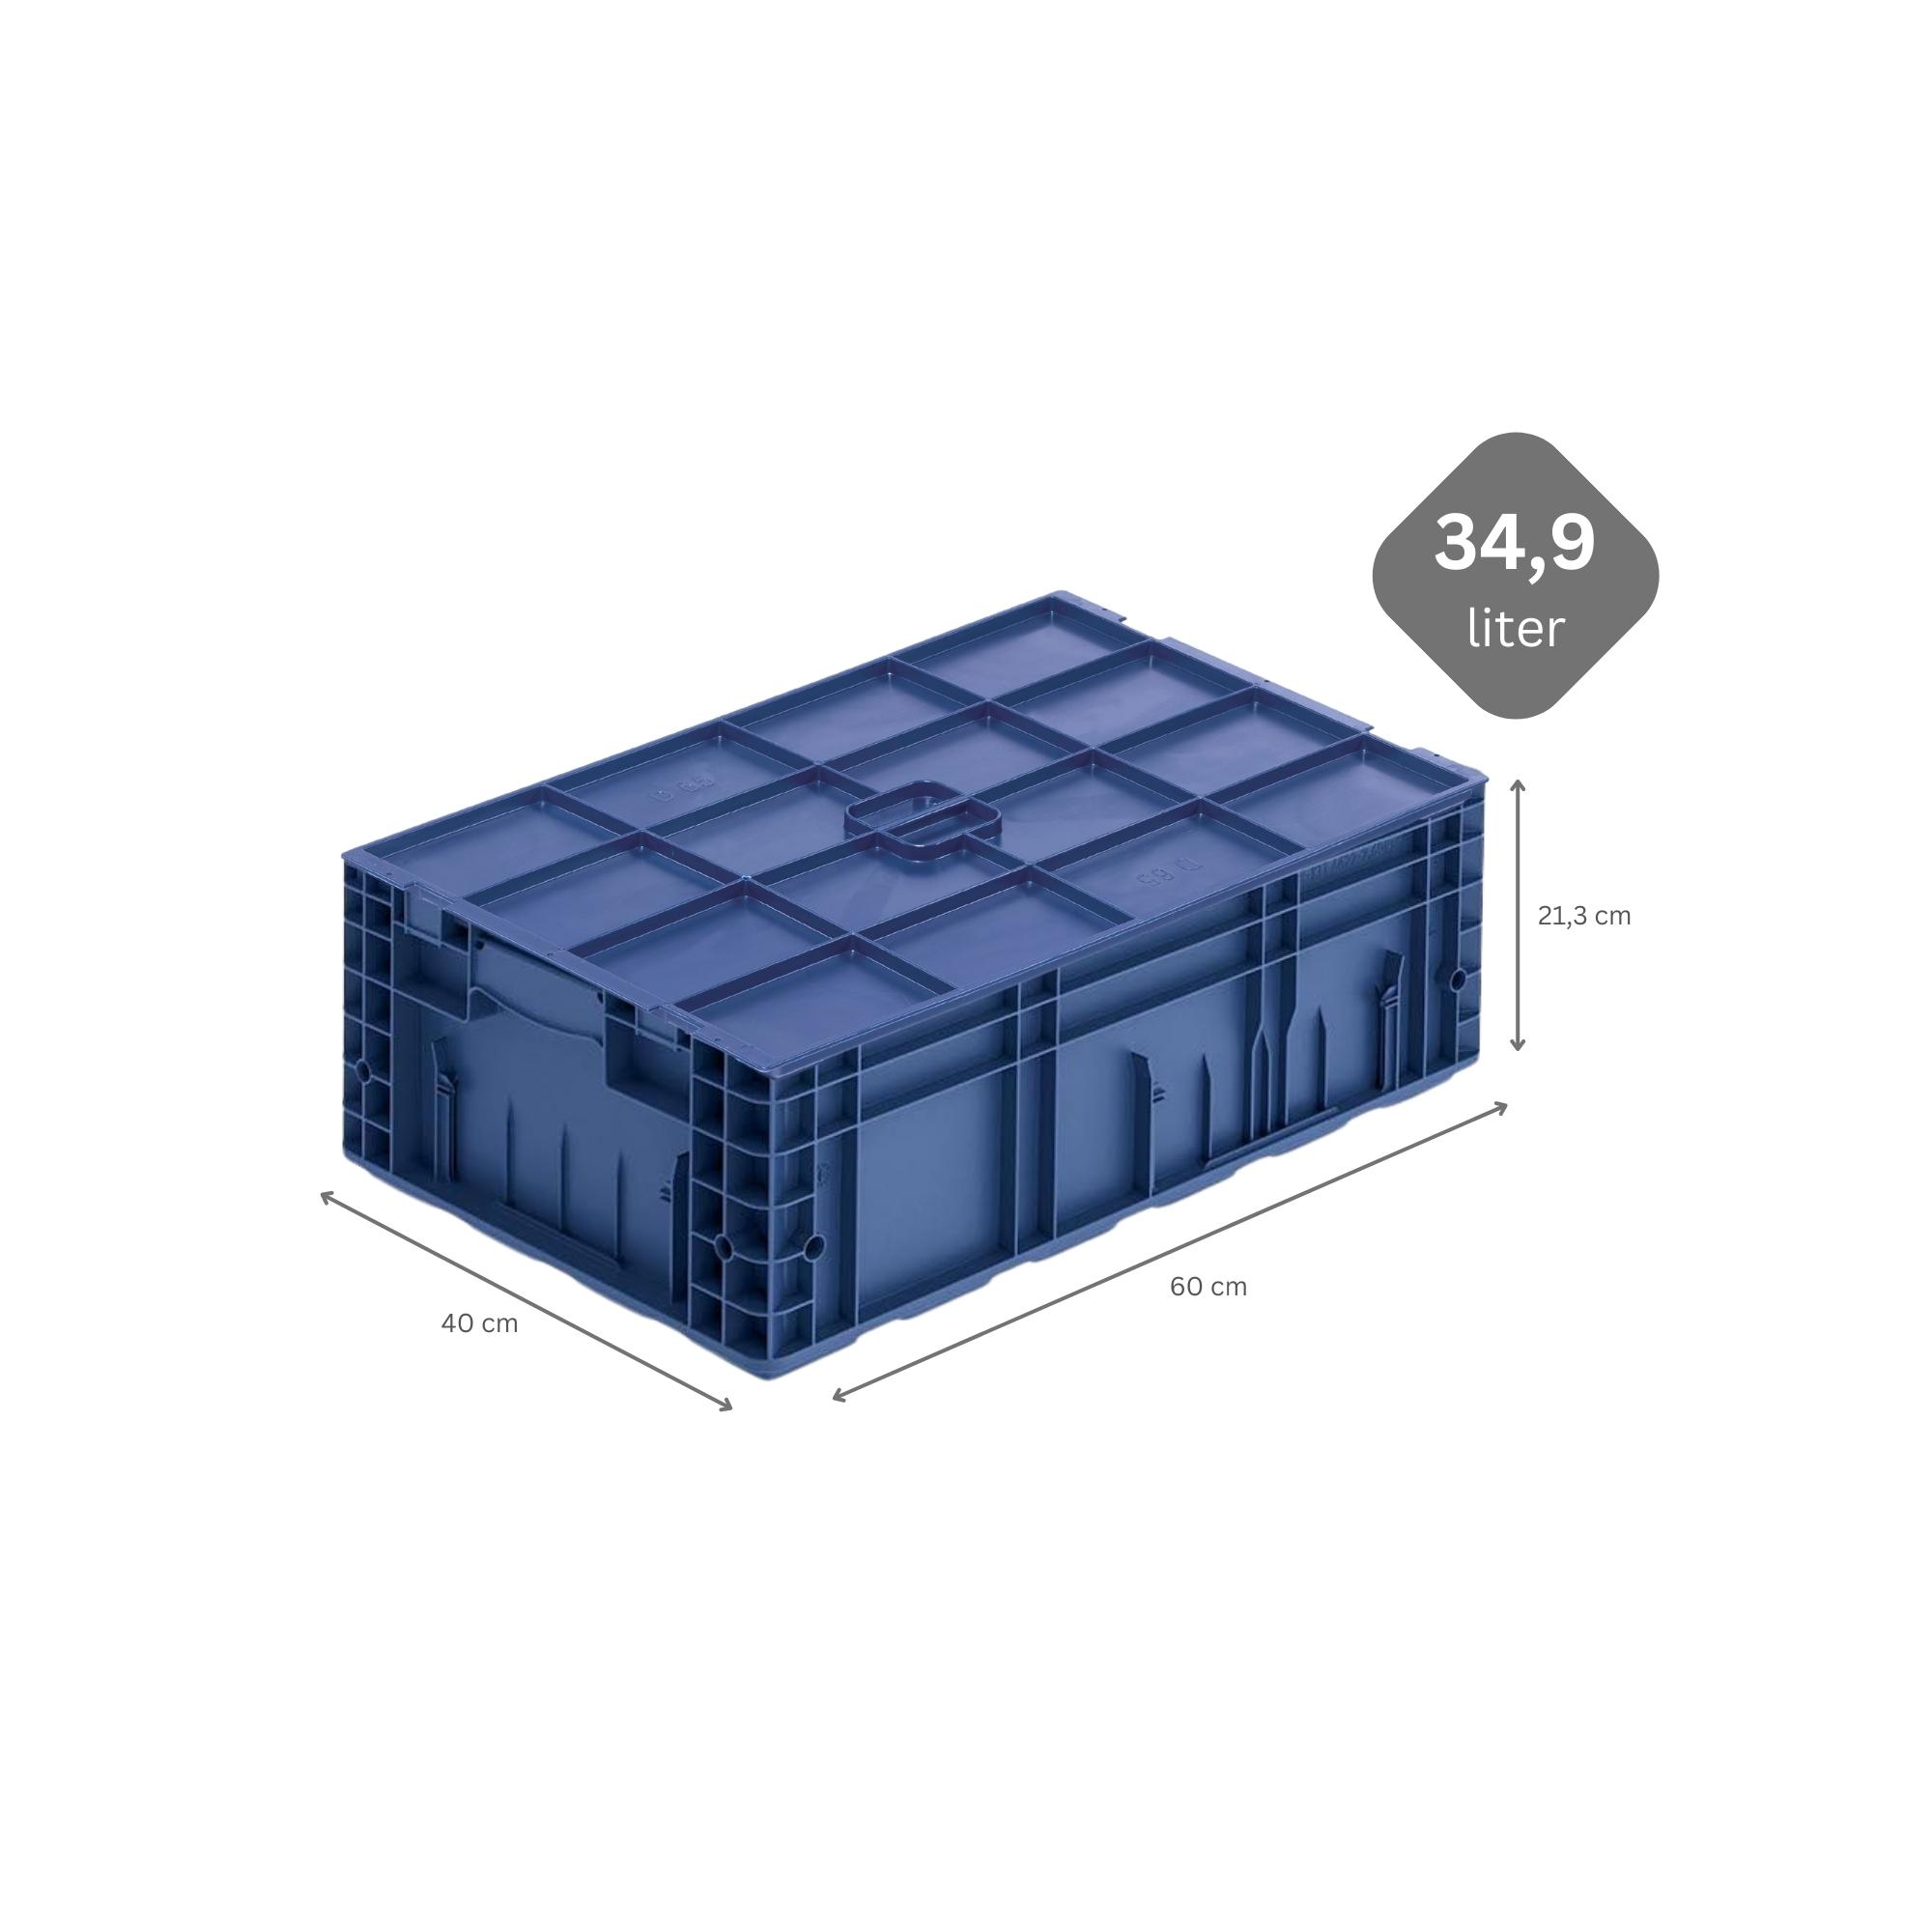 SparSet 10x VDA KLT Kleinladungsträger mit Verbundboden & Auflagedeckel | HxBxT 21,3x40x60cm | 34,9 Liter | KLT, Transportbox, Transportbehälter, Stapelbehälter